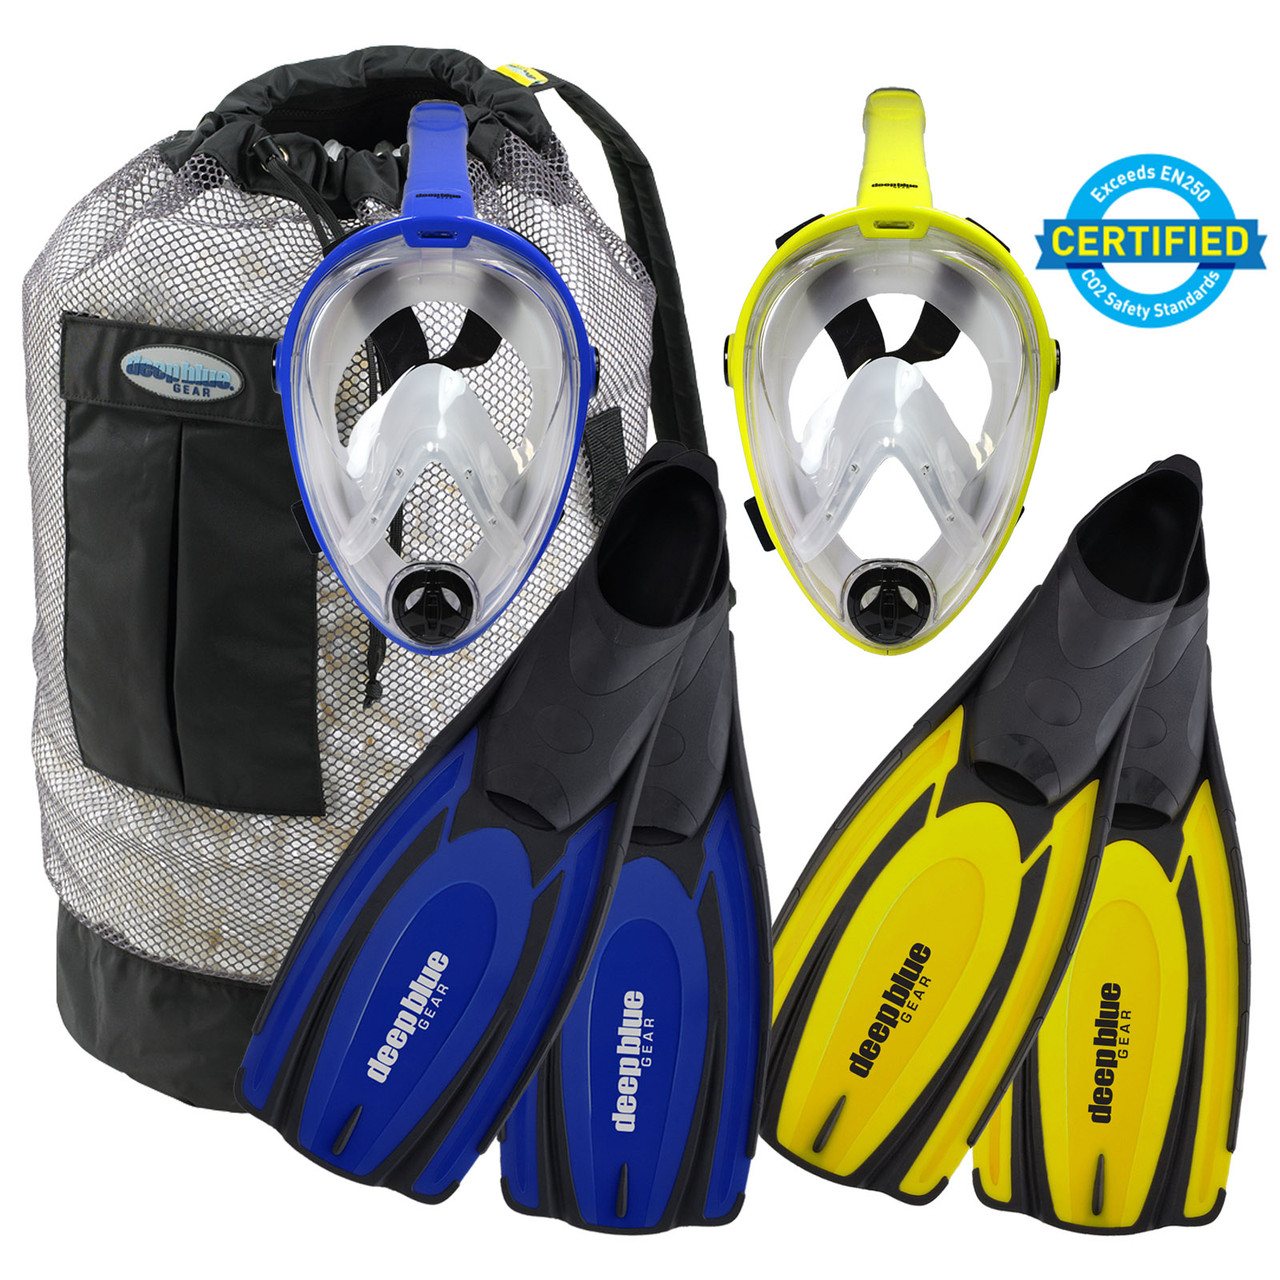 Buddy Full Mask Combo Snorkeling by Deep Blue Gear